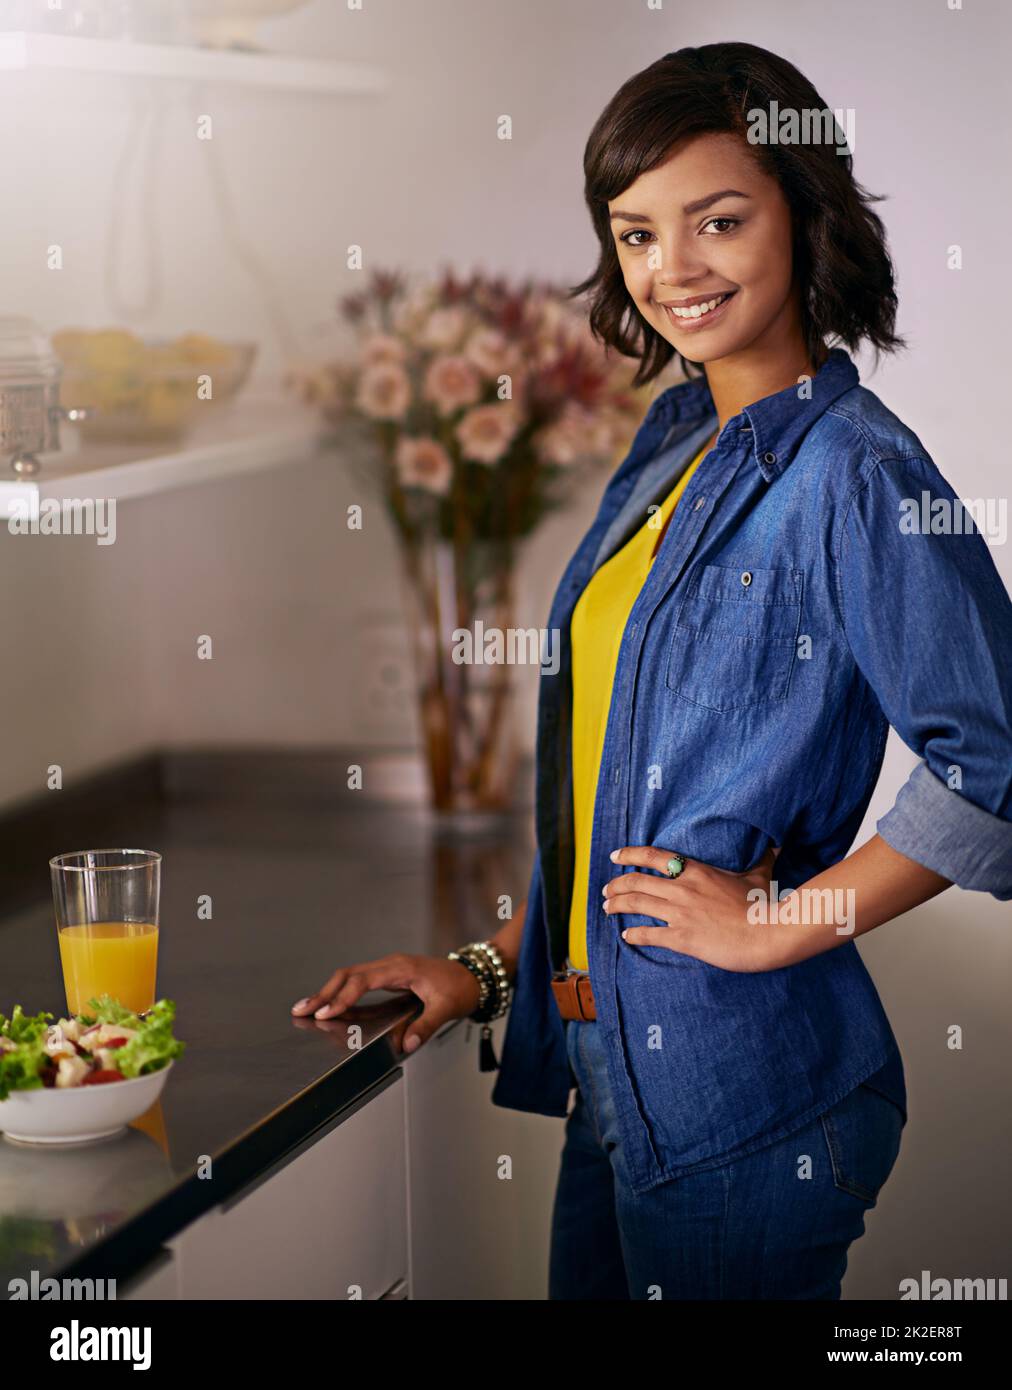 En cualquier momento es la hora de la ensalada. Retrato de una mujer joven a punto de tener una ensalada saludable en casa. Foto de stock